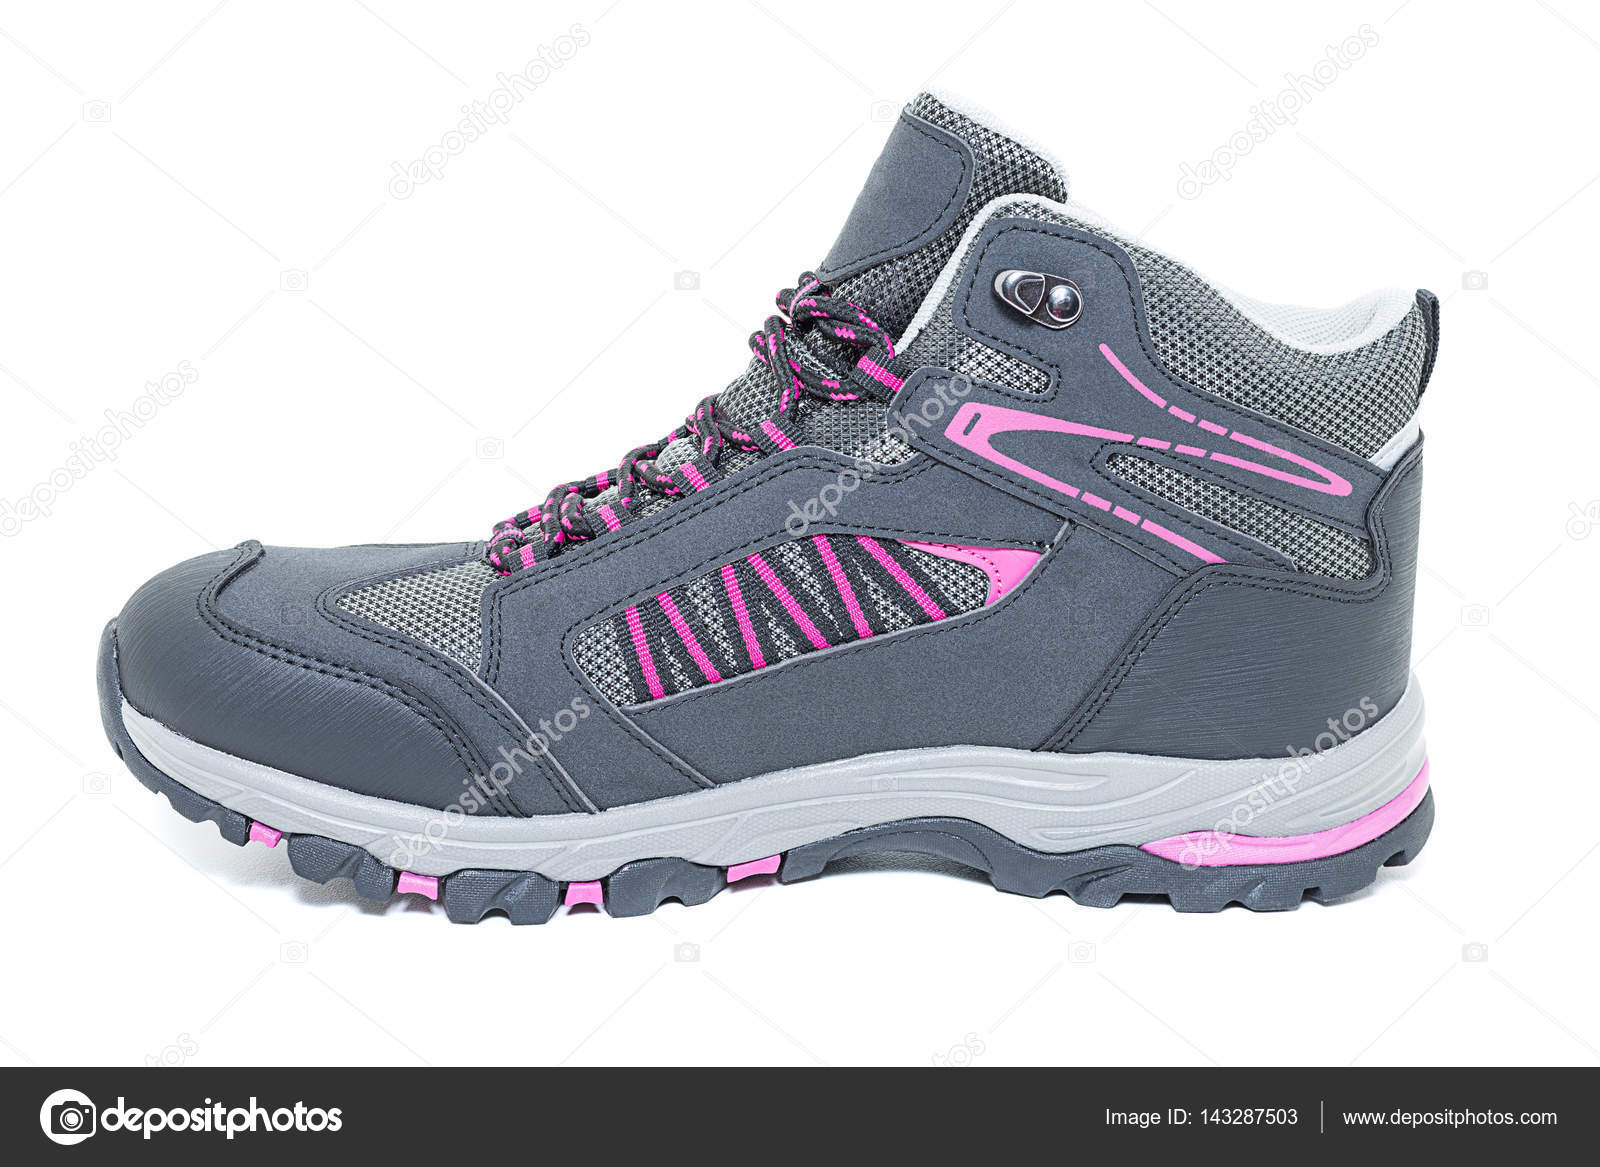 Ladies hiking waterproof shoes 